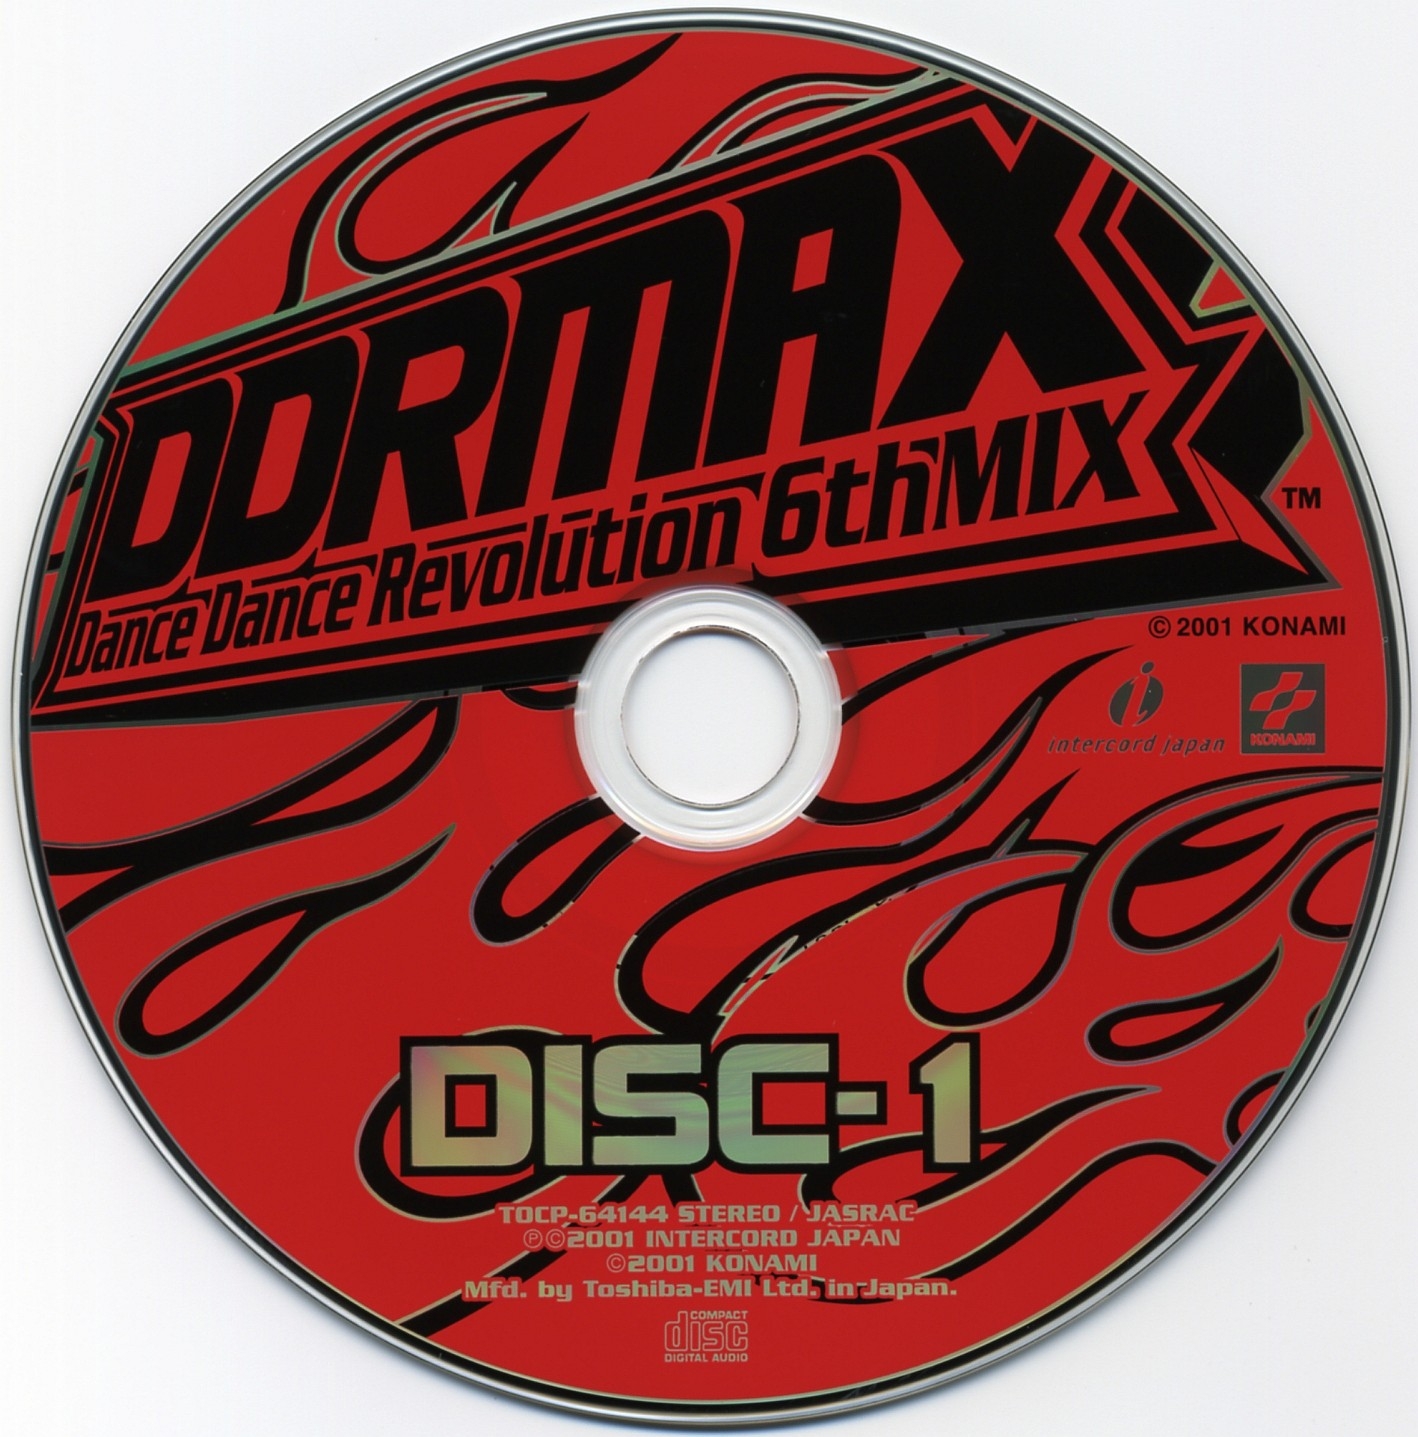 DDRMAX ORIGINAL SOUNDTRACK (2001) MP3 - Download DDRMAX ORIGINAL 